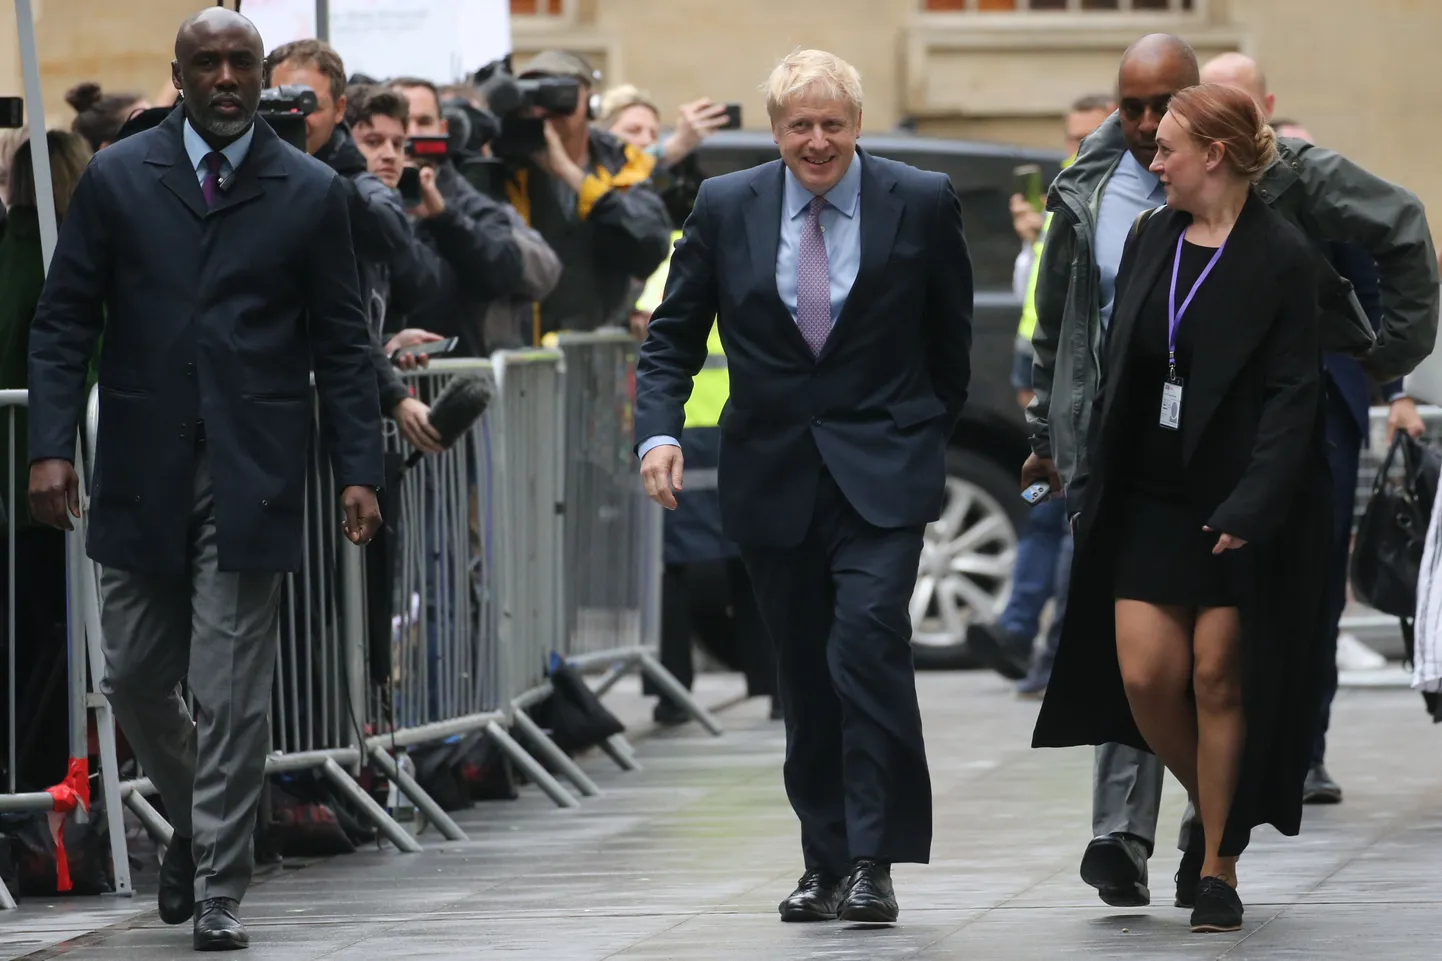 Konservatiivist parlamendisaadik Boris Johnson teisipäeval oma erakonna juhi ja seekaudu ka peaministri koha poole tammumas.